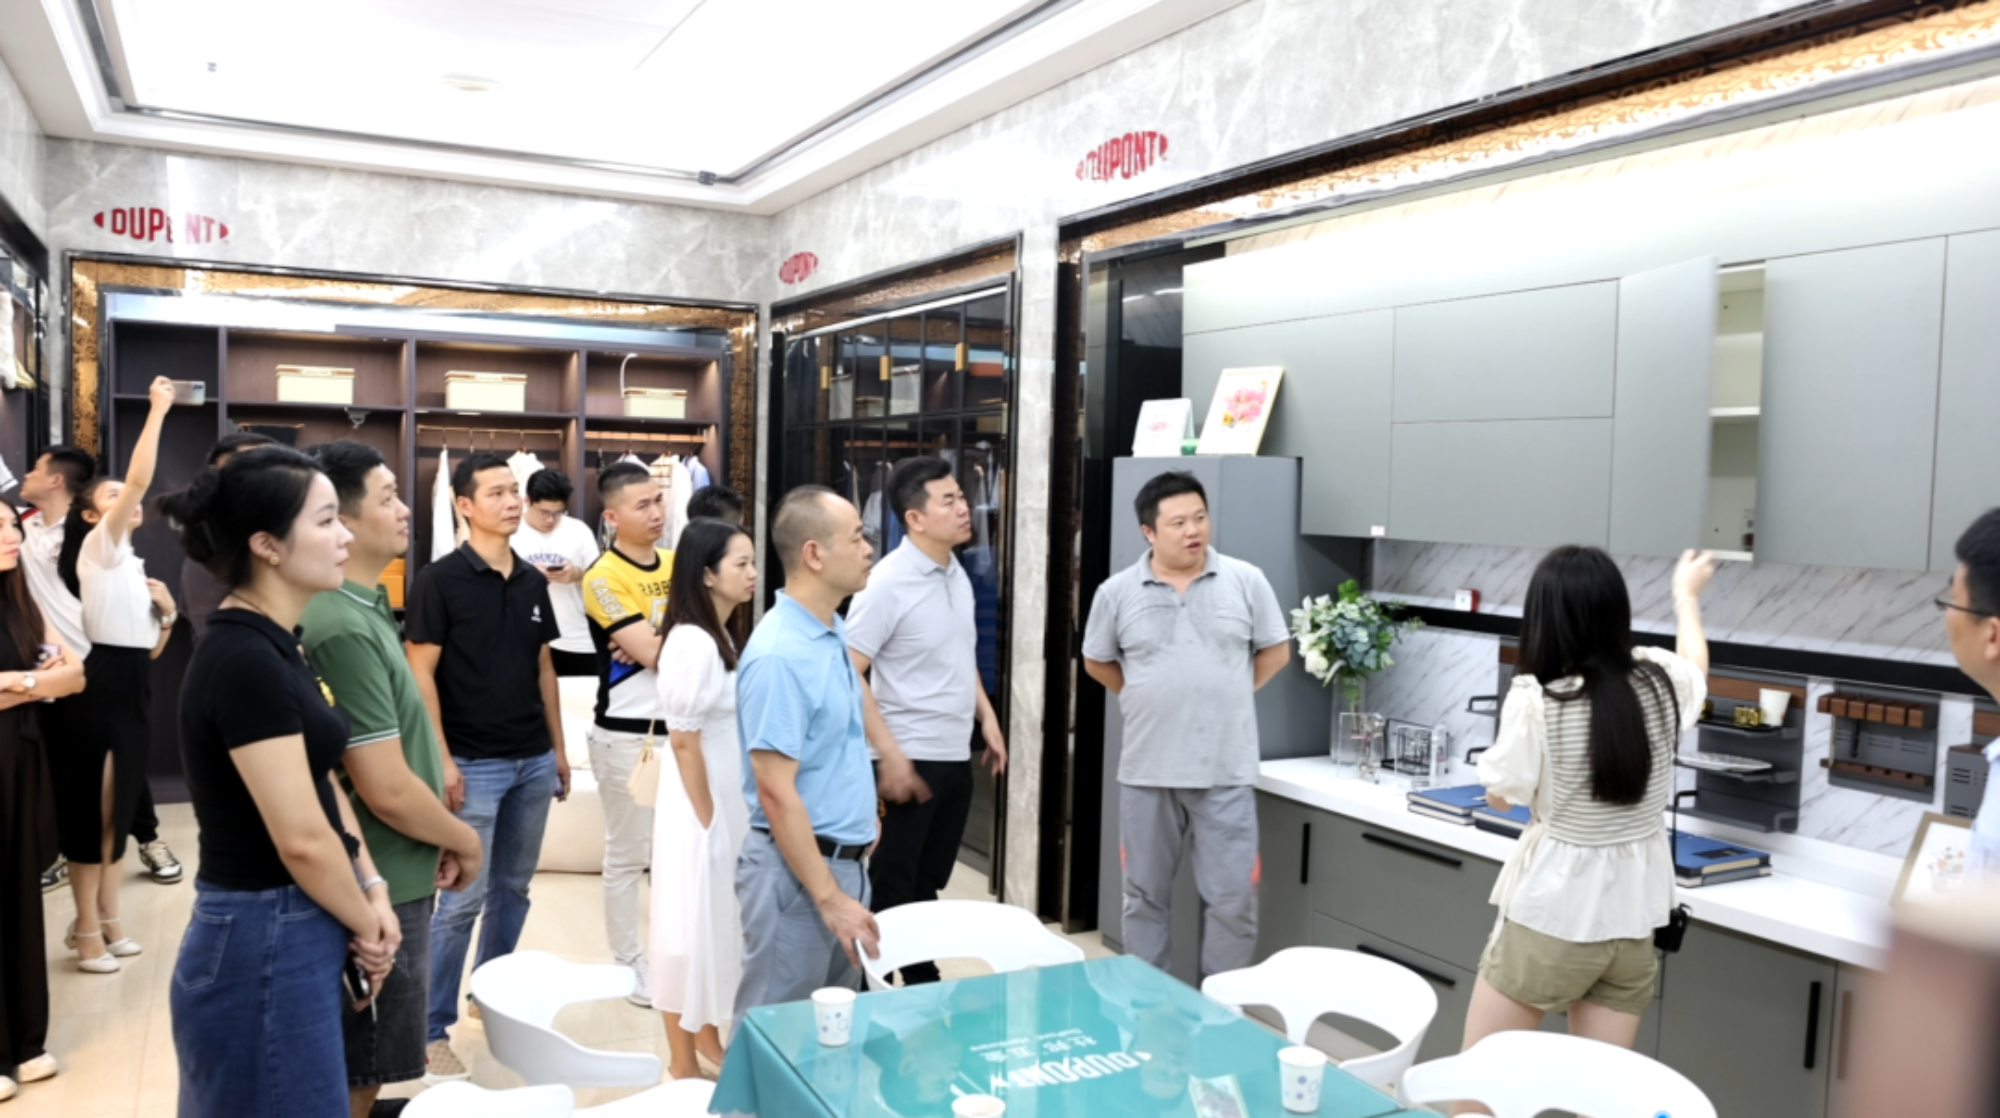 ROEASY Hardware Information | Hjerteligt velkommen Guangdong Home Building Materials Chamber of Commerce Youth Committee Inspection and Exchange Team til vores virksomhed til besøg og udveksling